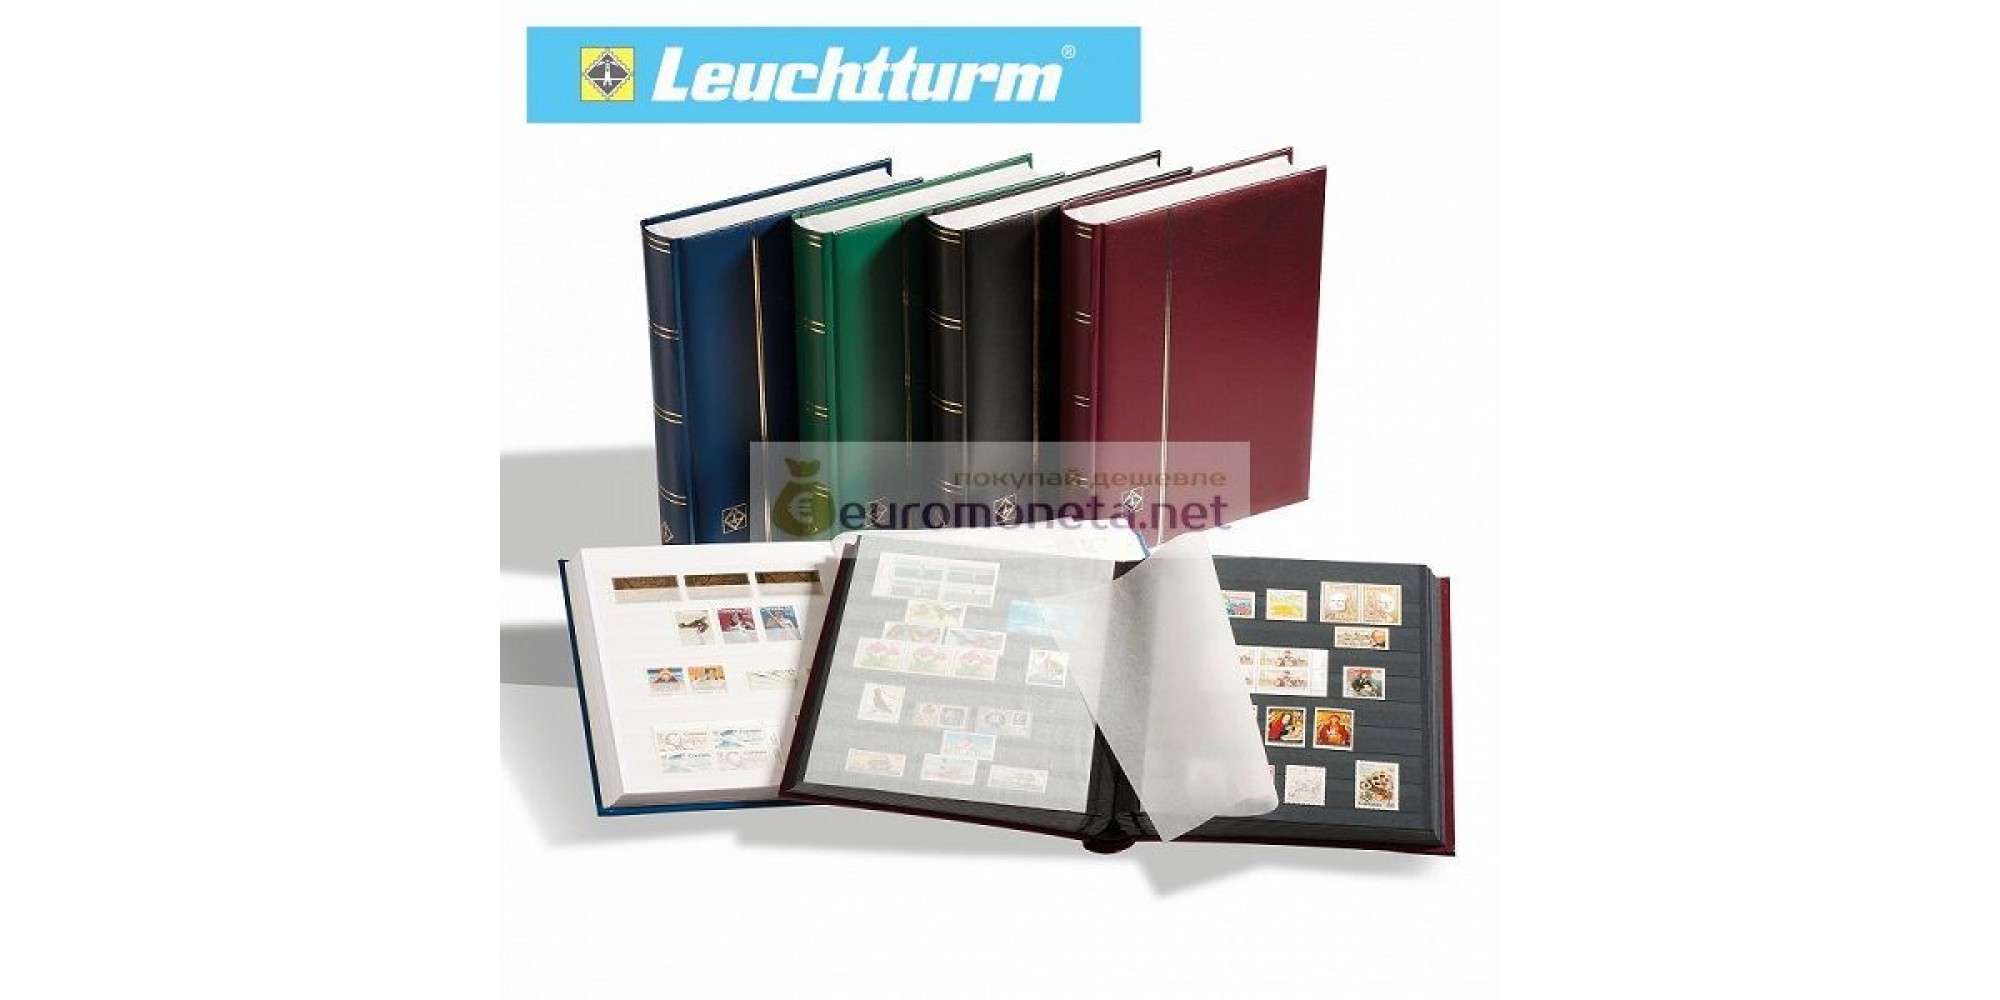 Leuchtturm альбом COMFORT DIN A4 S32 чёрные страницы, мягкая обложка, синий, Германия